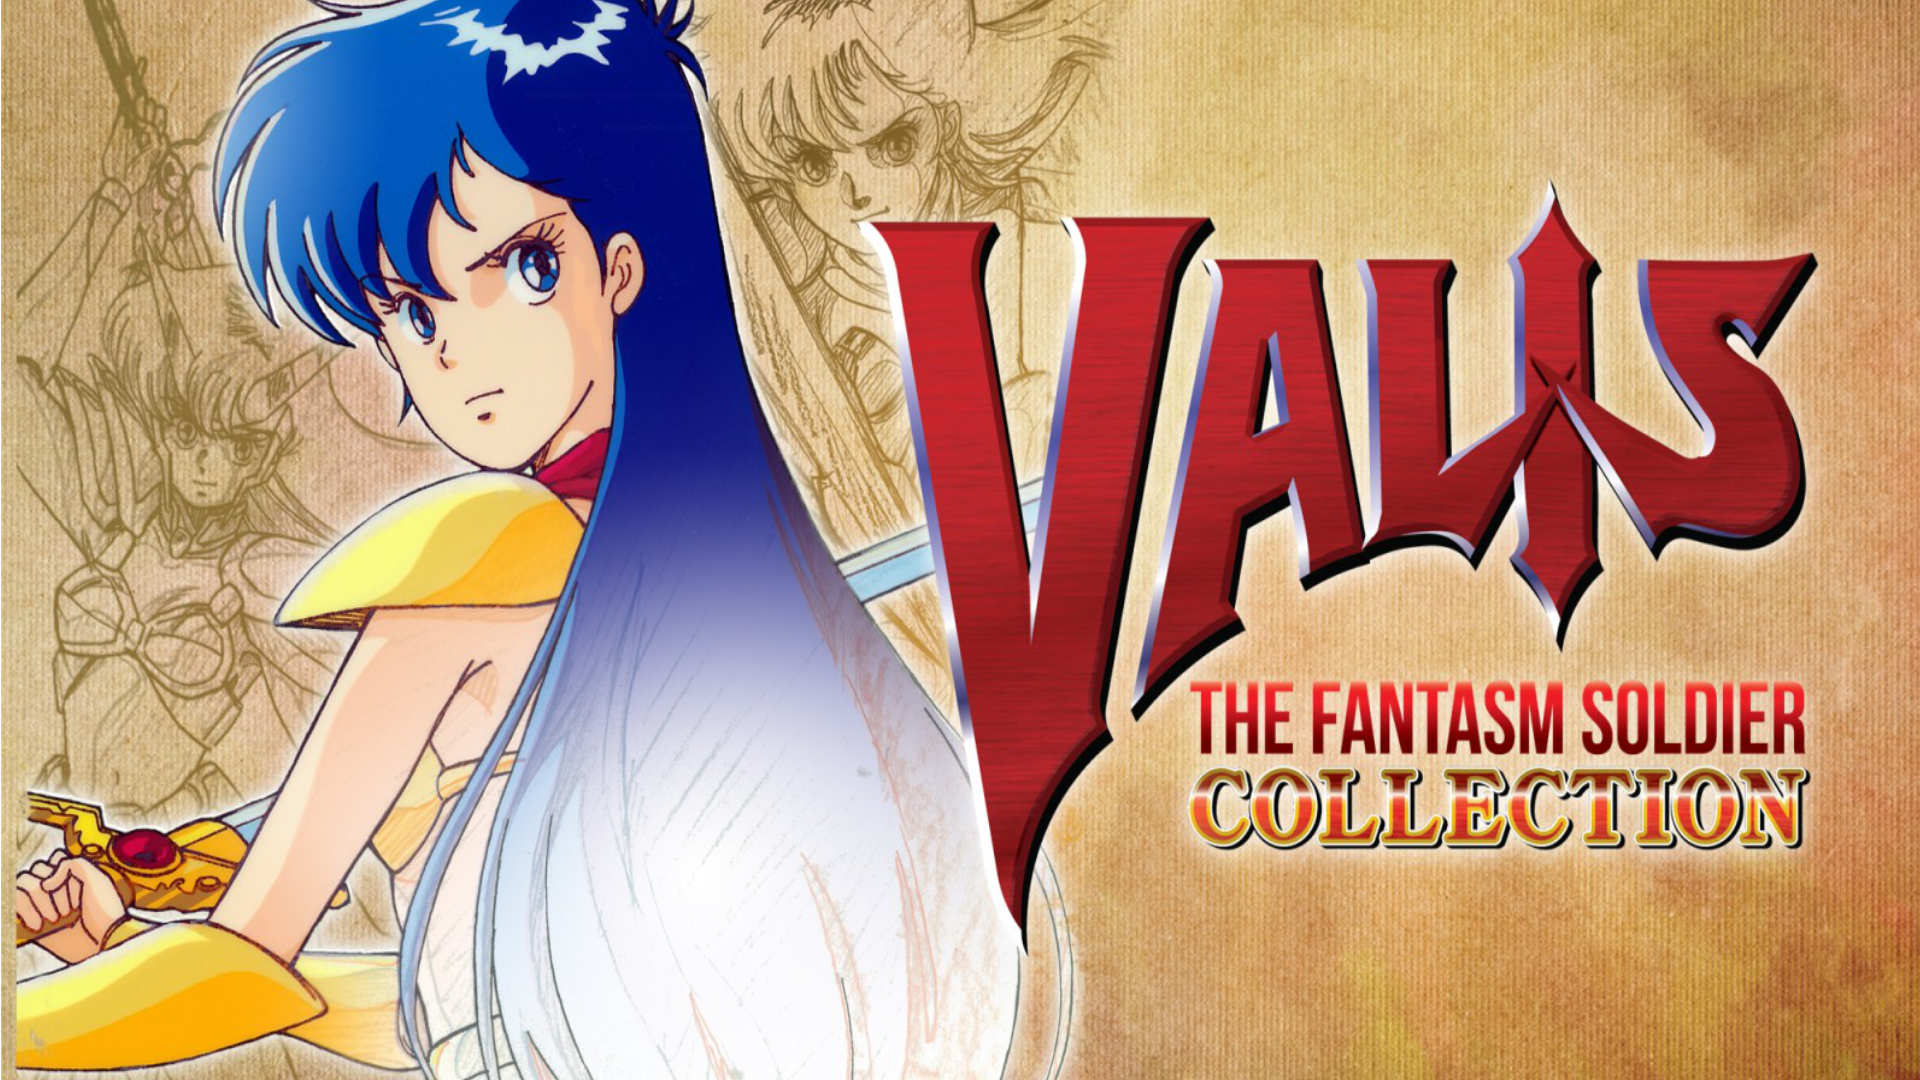 Valis: The Fantasm Soldier Collection 2 für die Switch angekündigt